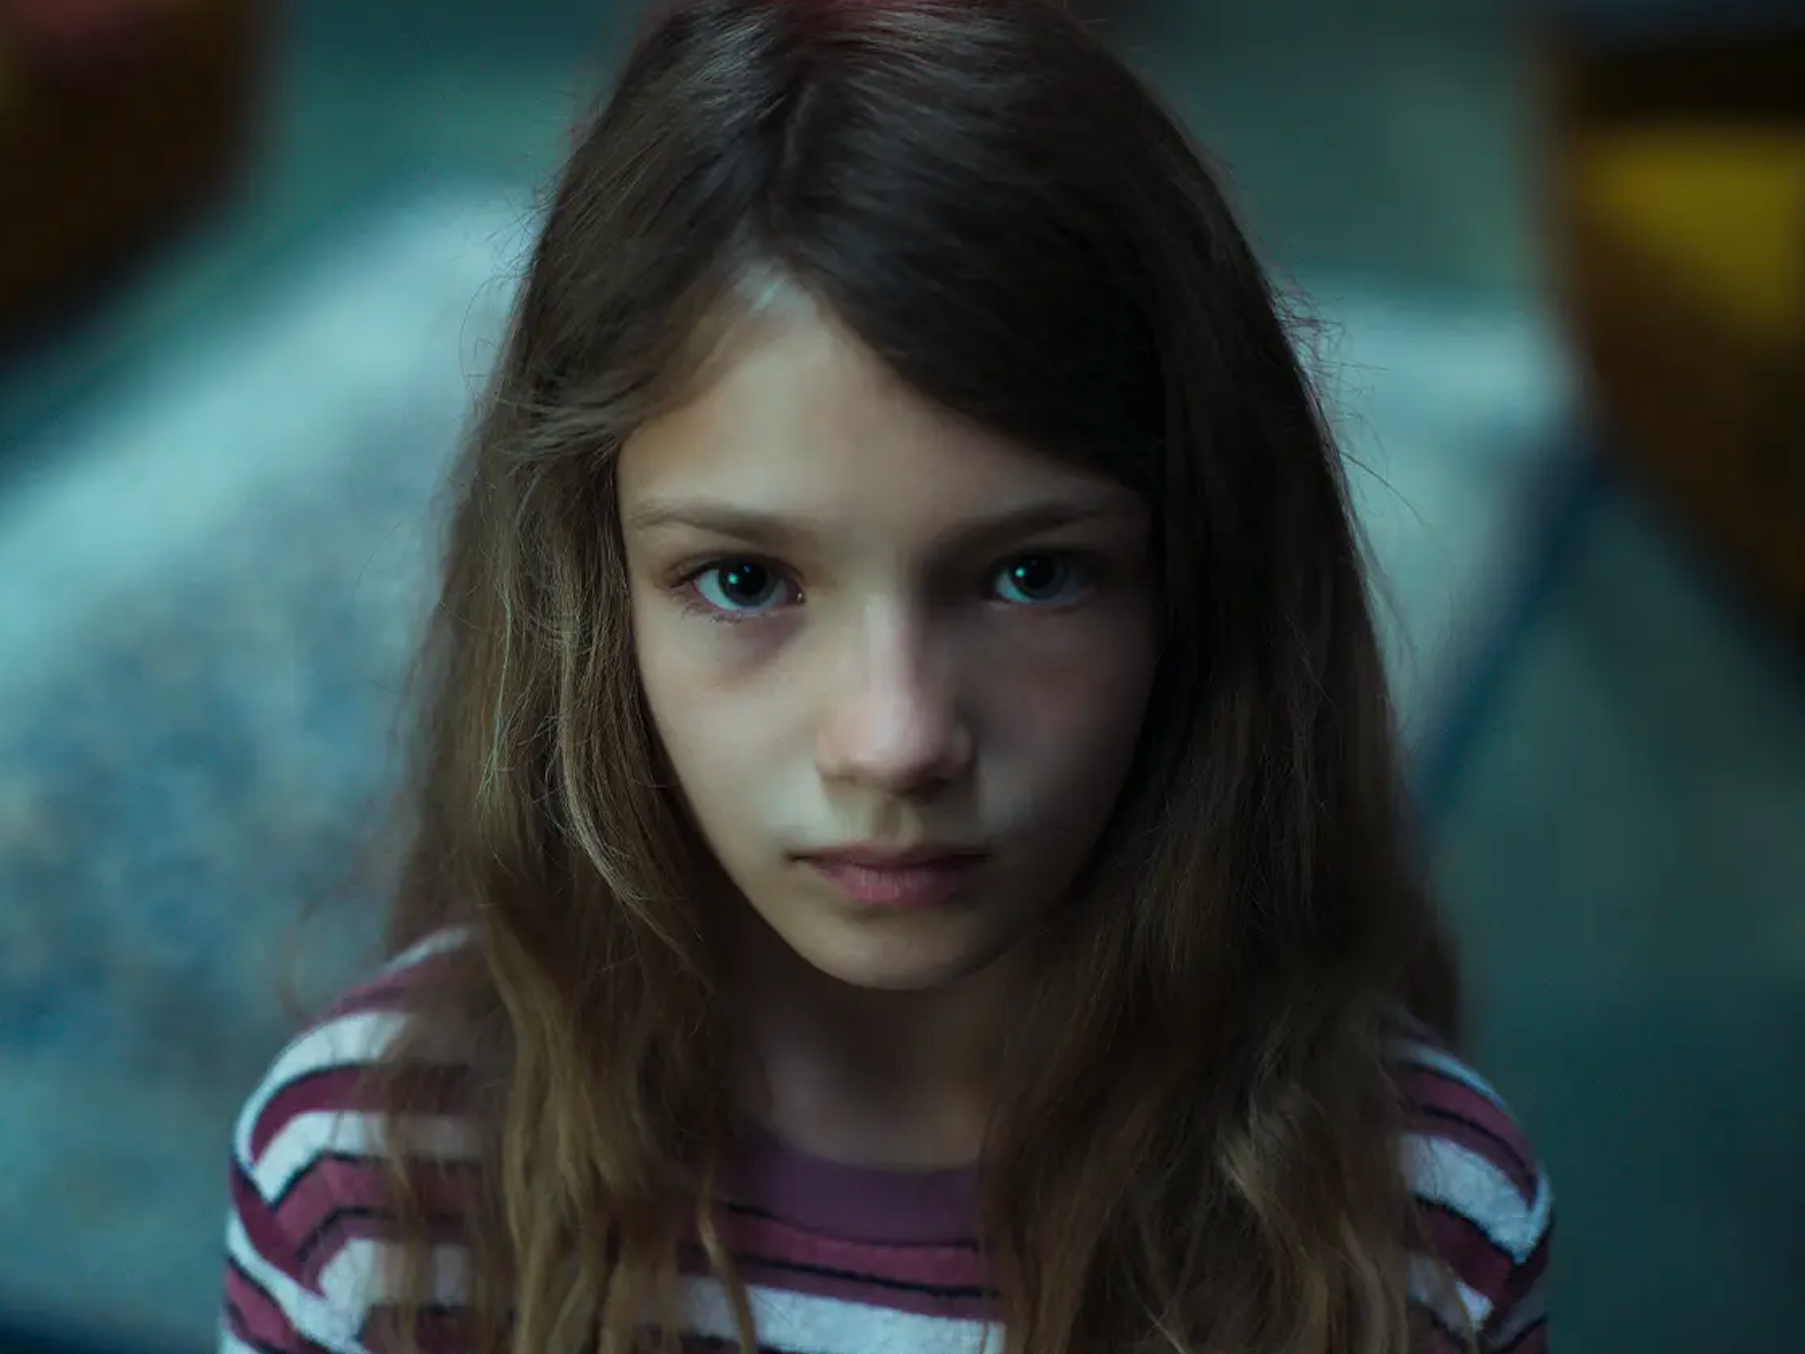 Naila Schuberth as Hannah in "Dear Child."